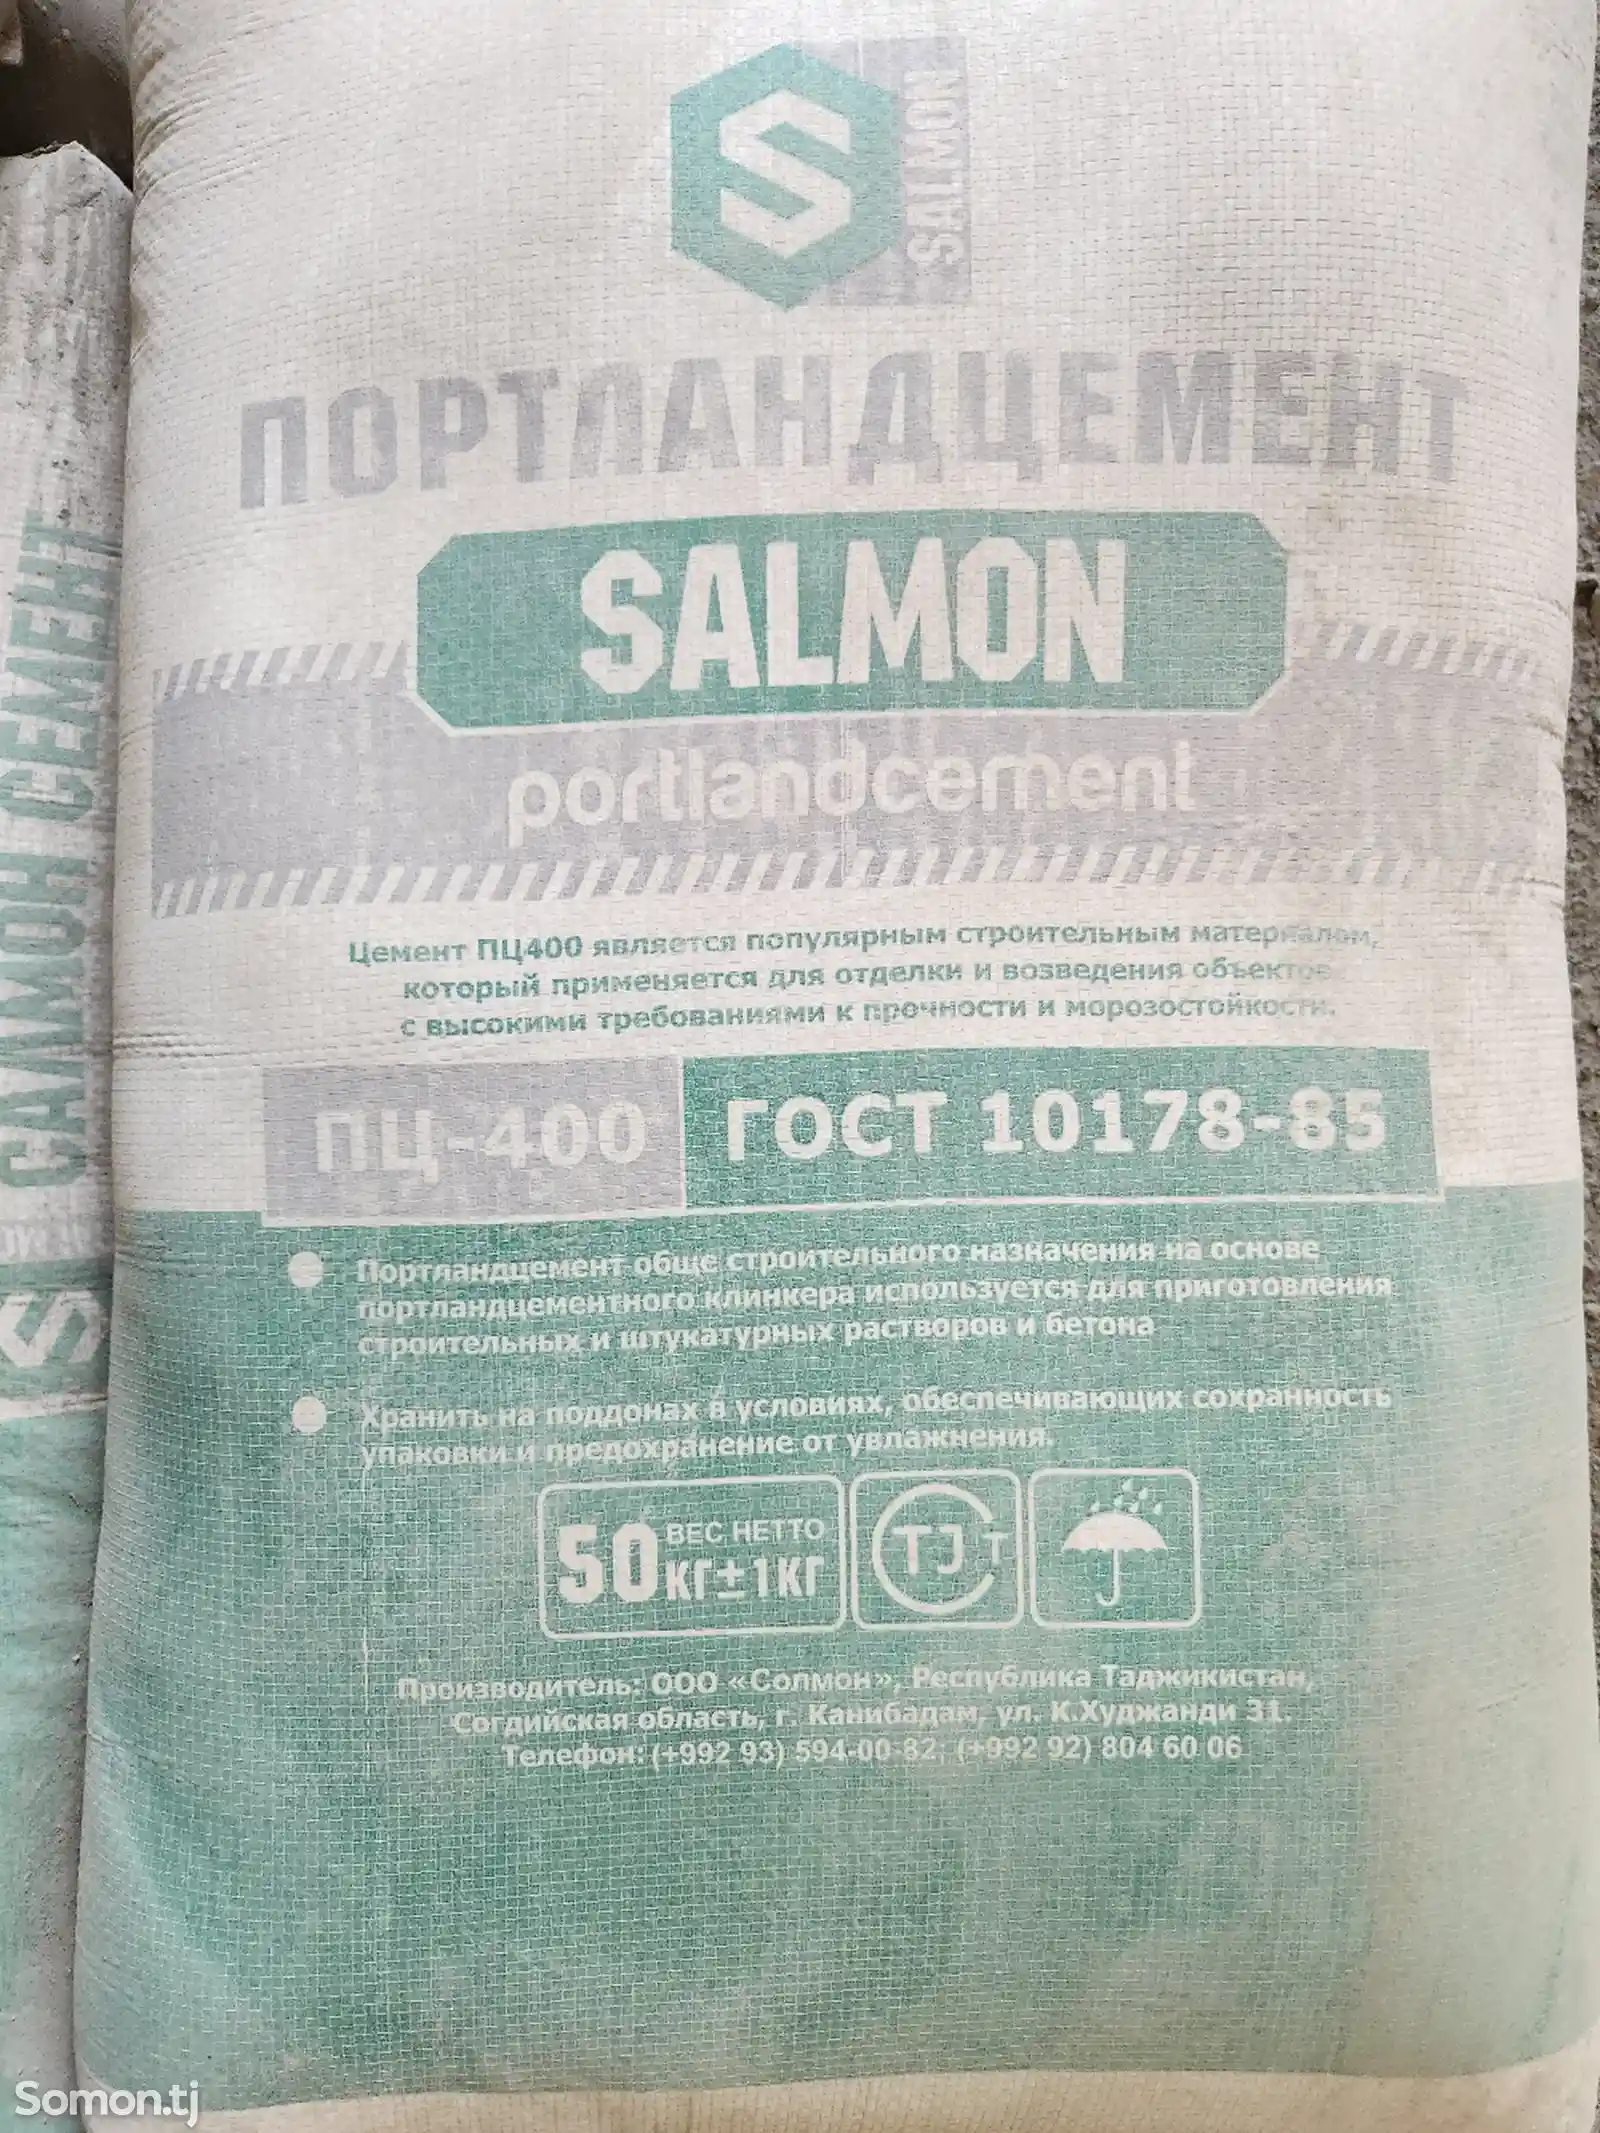 Семент салмон